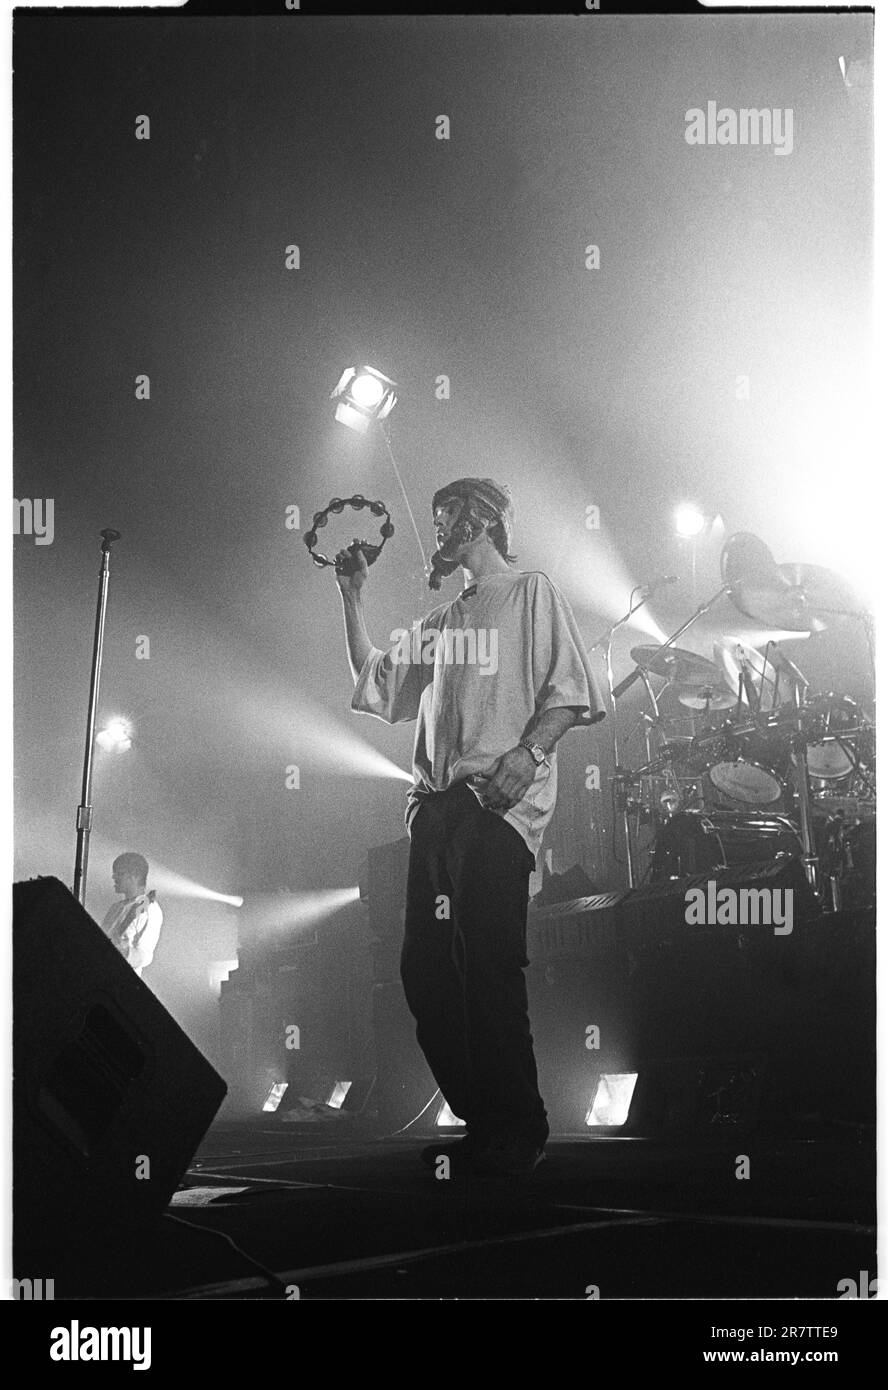 IAN BROWN, THE STONE ROSES, CANTANTE, 1994: Ian Brown dei The Stone Roses che suonano al Newport Centre di Newport, Galles, Regno Unito in un tour per promuovere il loro singolo Love Spreads e l'album Second Coming, il 4 dicembre 1994. Foto: Rob Watkins Foto Stock